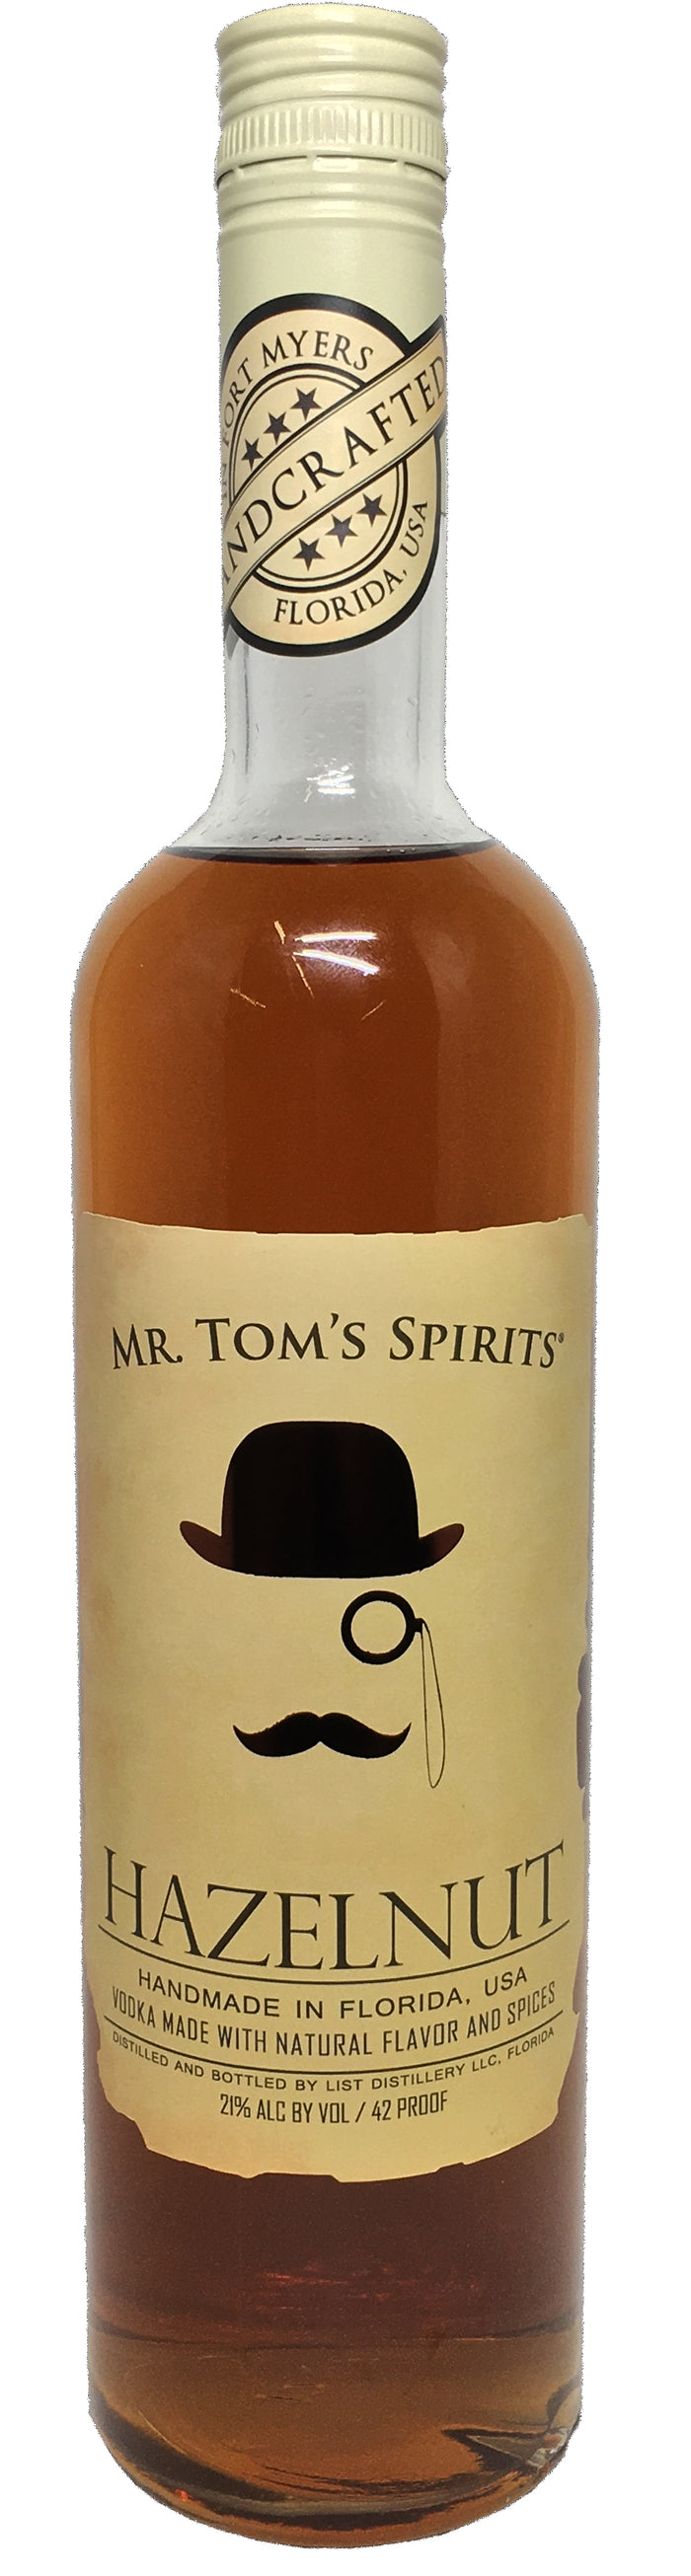 Mr. Tom's Spirits Hazelnut Vodka